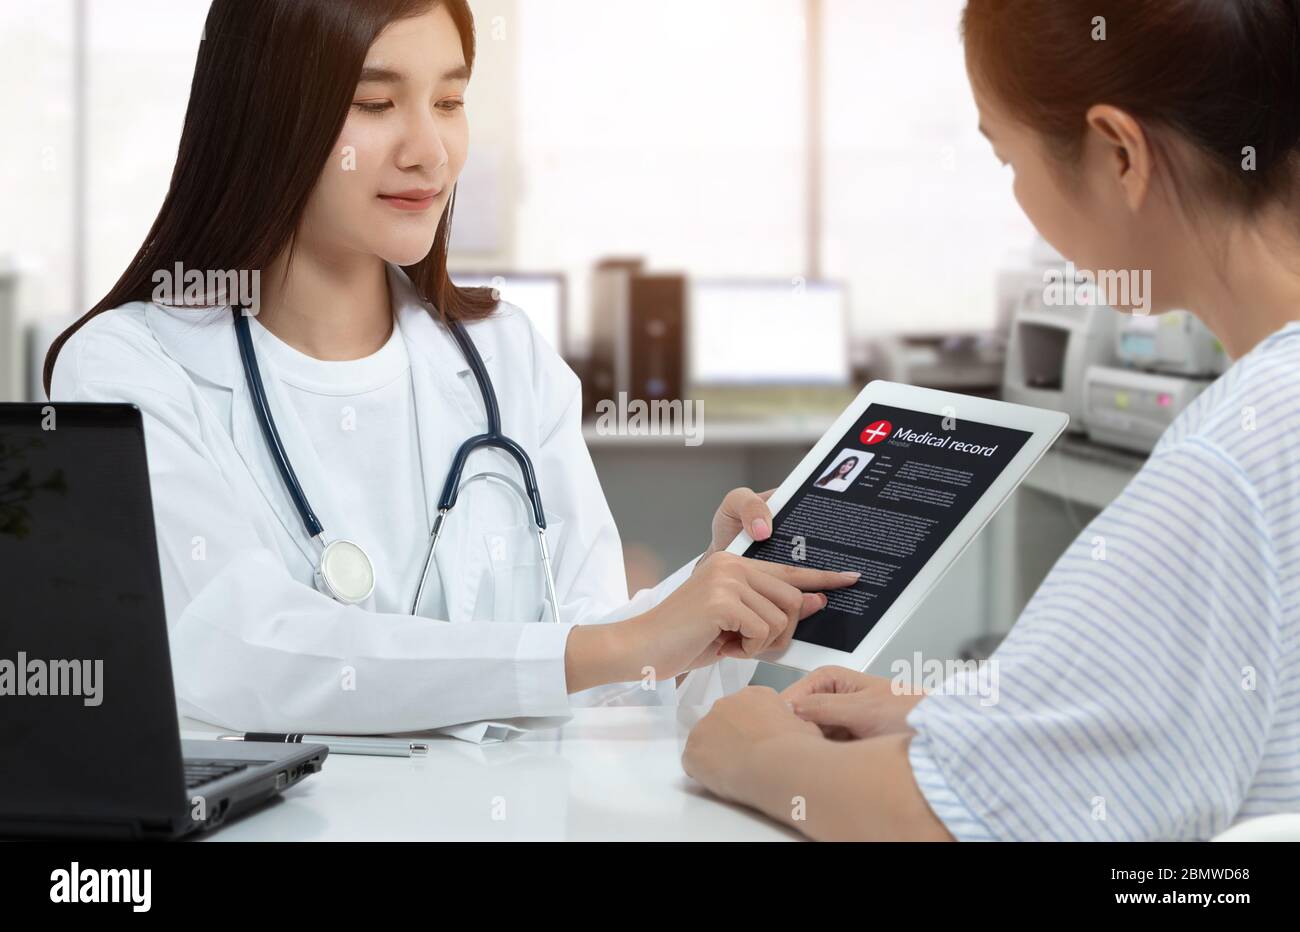 Asiatische Frau Arzt hält Tablette mit Patienten Krankenakte auf dem Bildschirm, während Rücksprache mit Patienten in medizinischen Sprechzimmer. Stockfoto